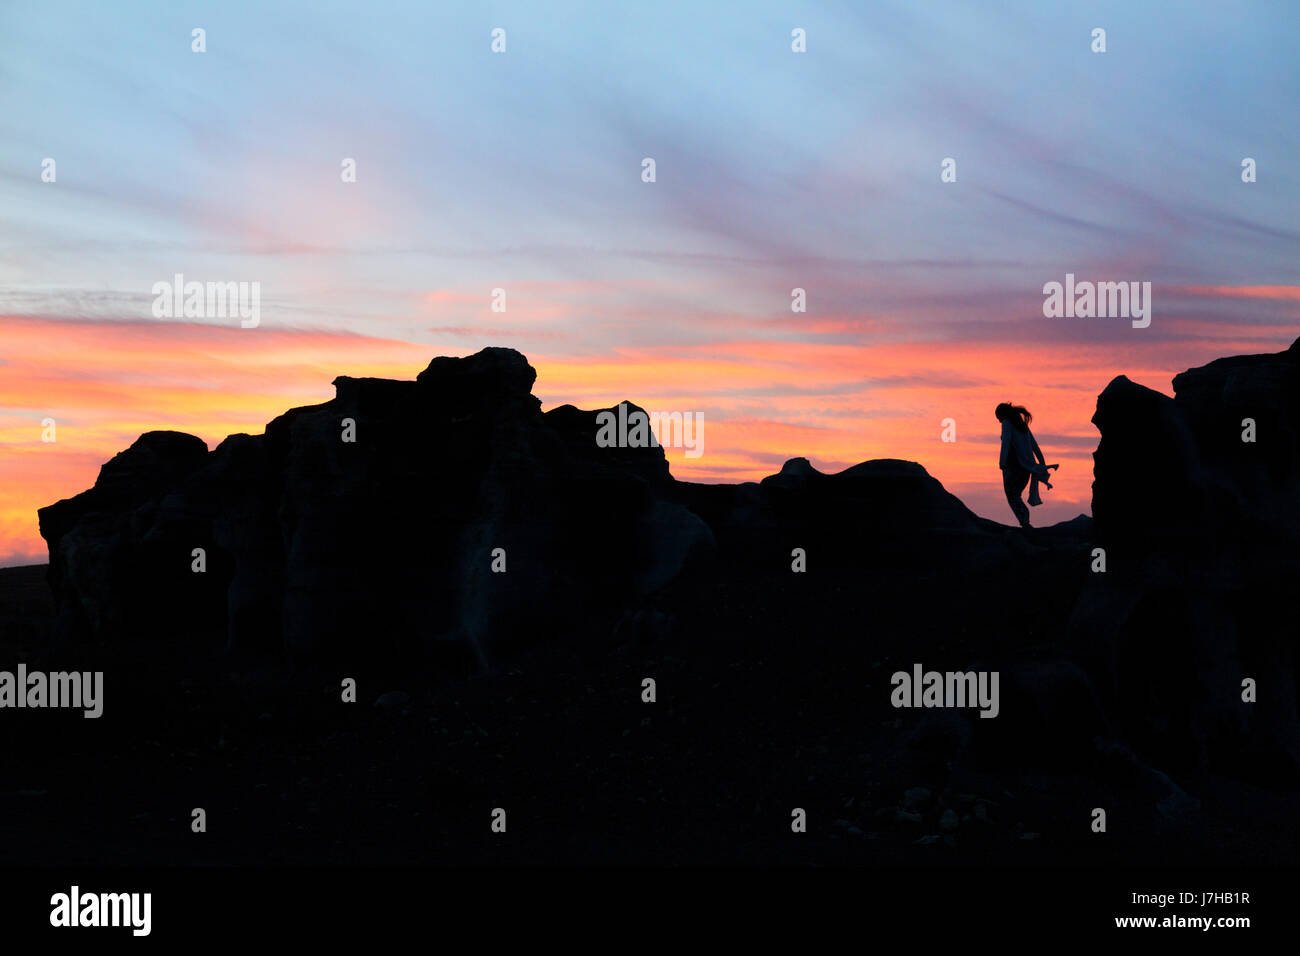 Lanzarote-Sonnenuntergang - eine Frau steht auf einem vulkanischen Felsen bei Sonnenuntergang, Lanzarote, Kanarische Inseln Europas. Konzept / konzeptionelle Bild Stockfoto